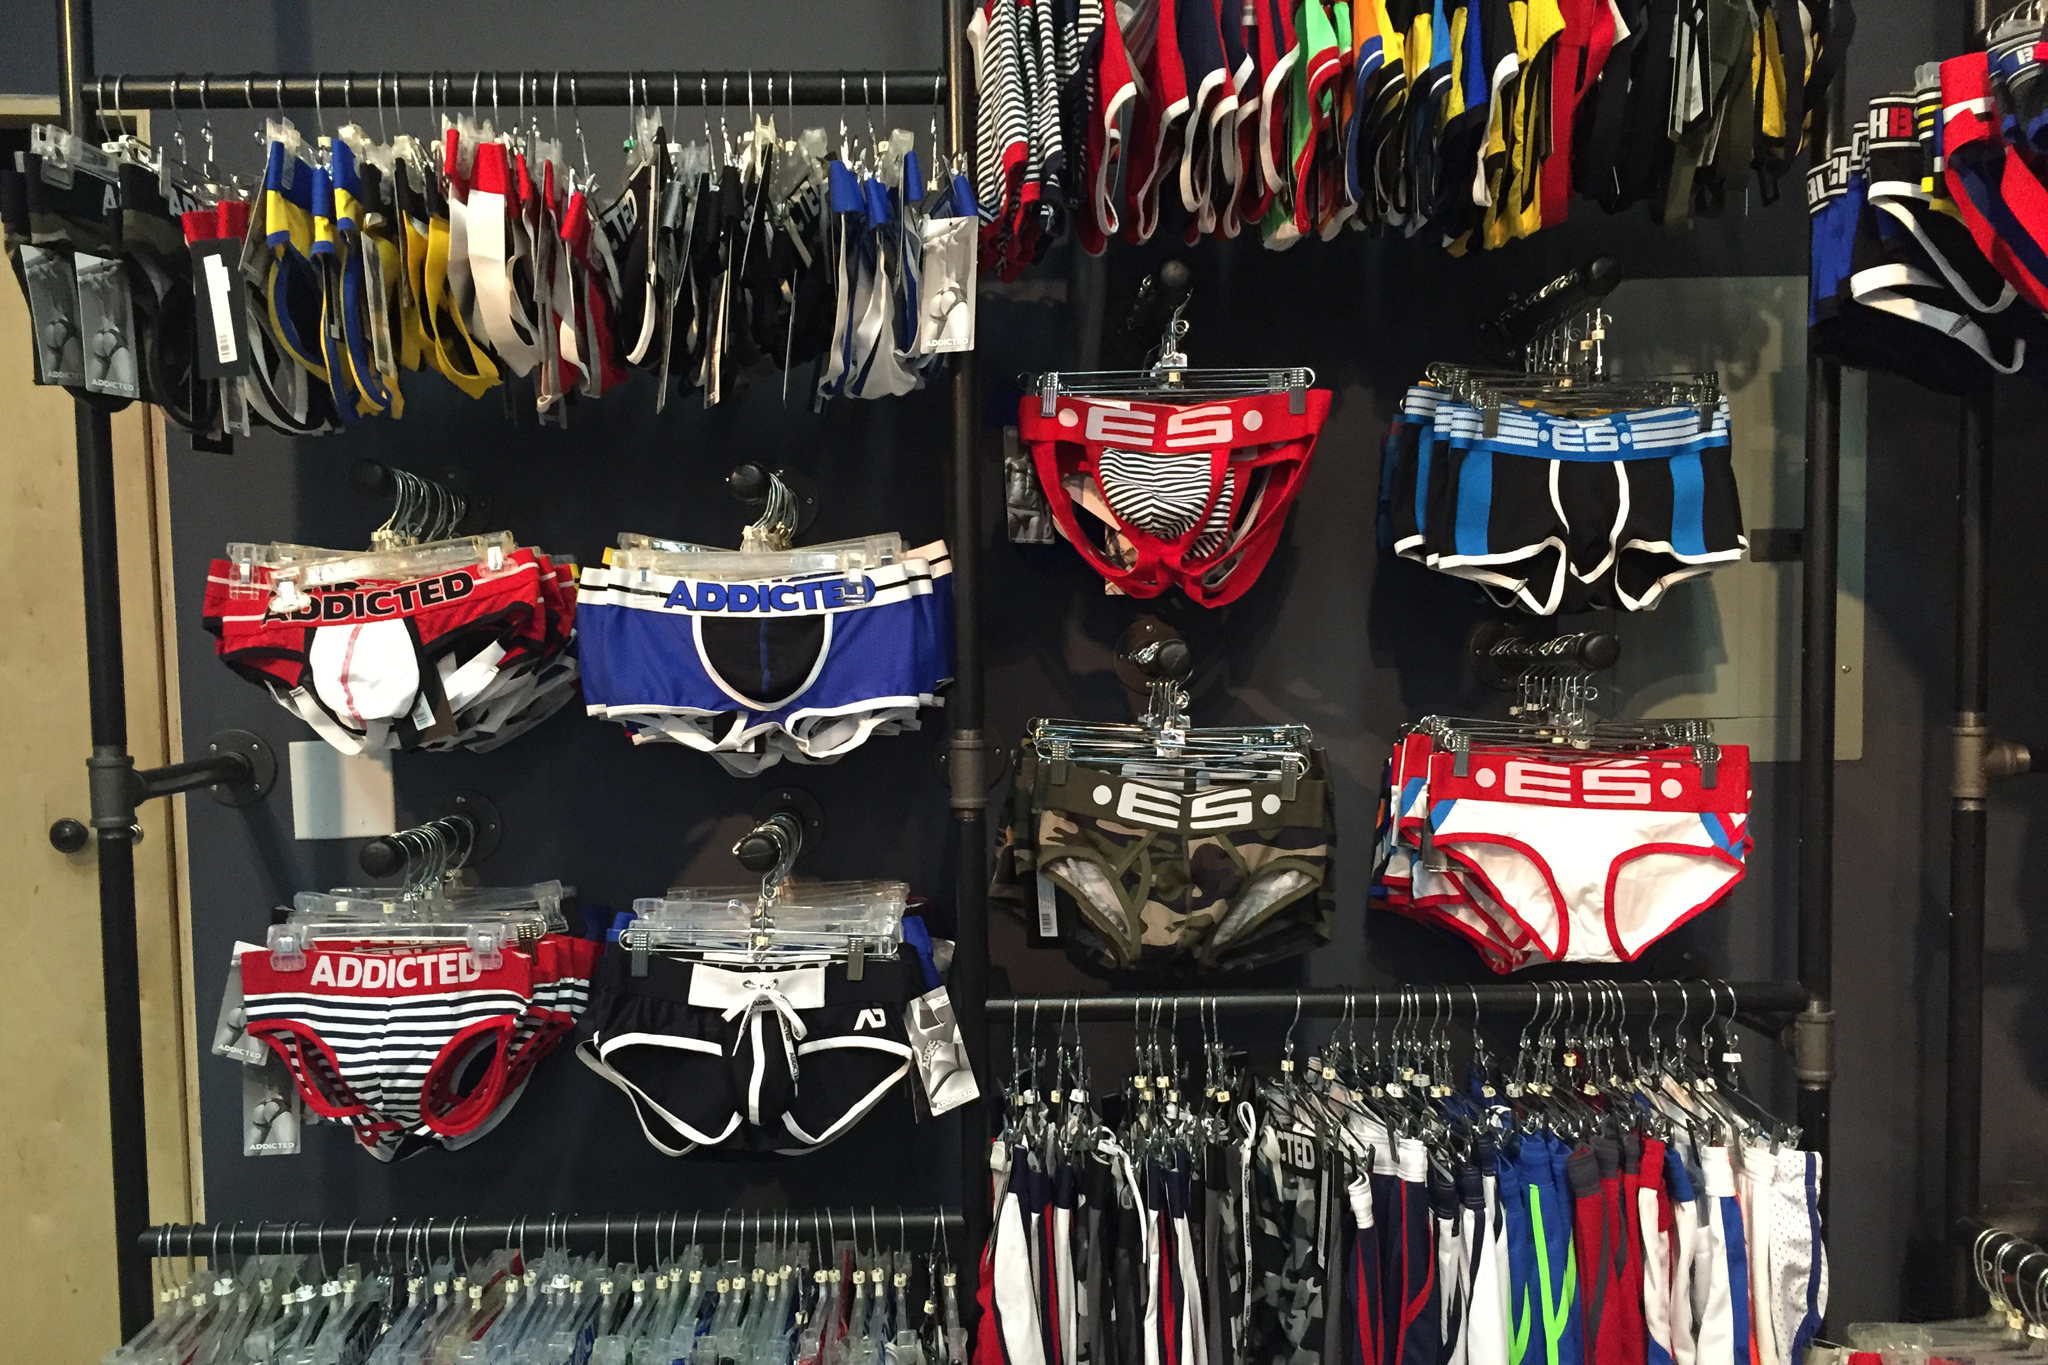 Egoist Underwear  Shopping in Lake View, Chicago